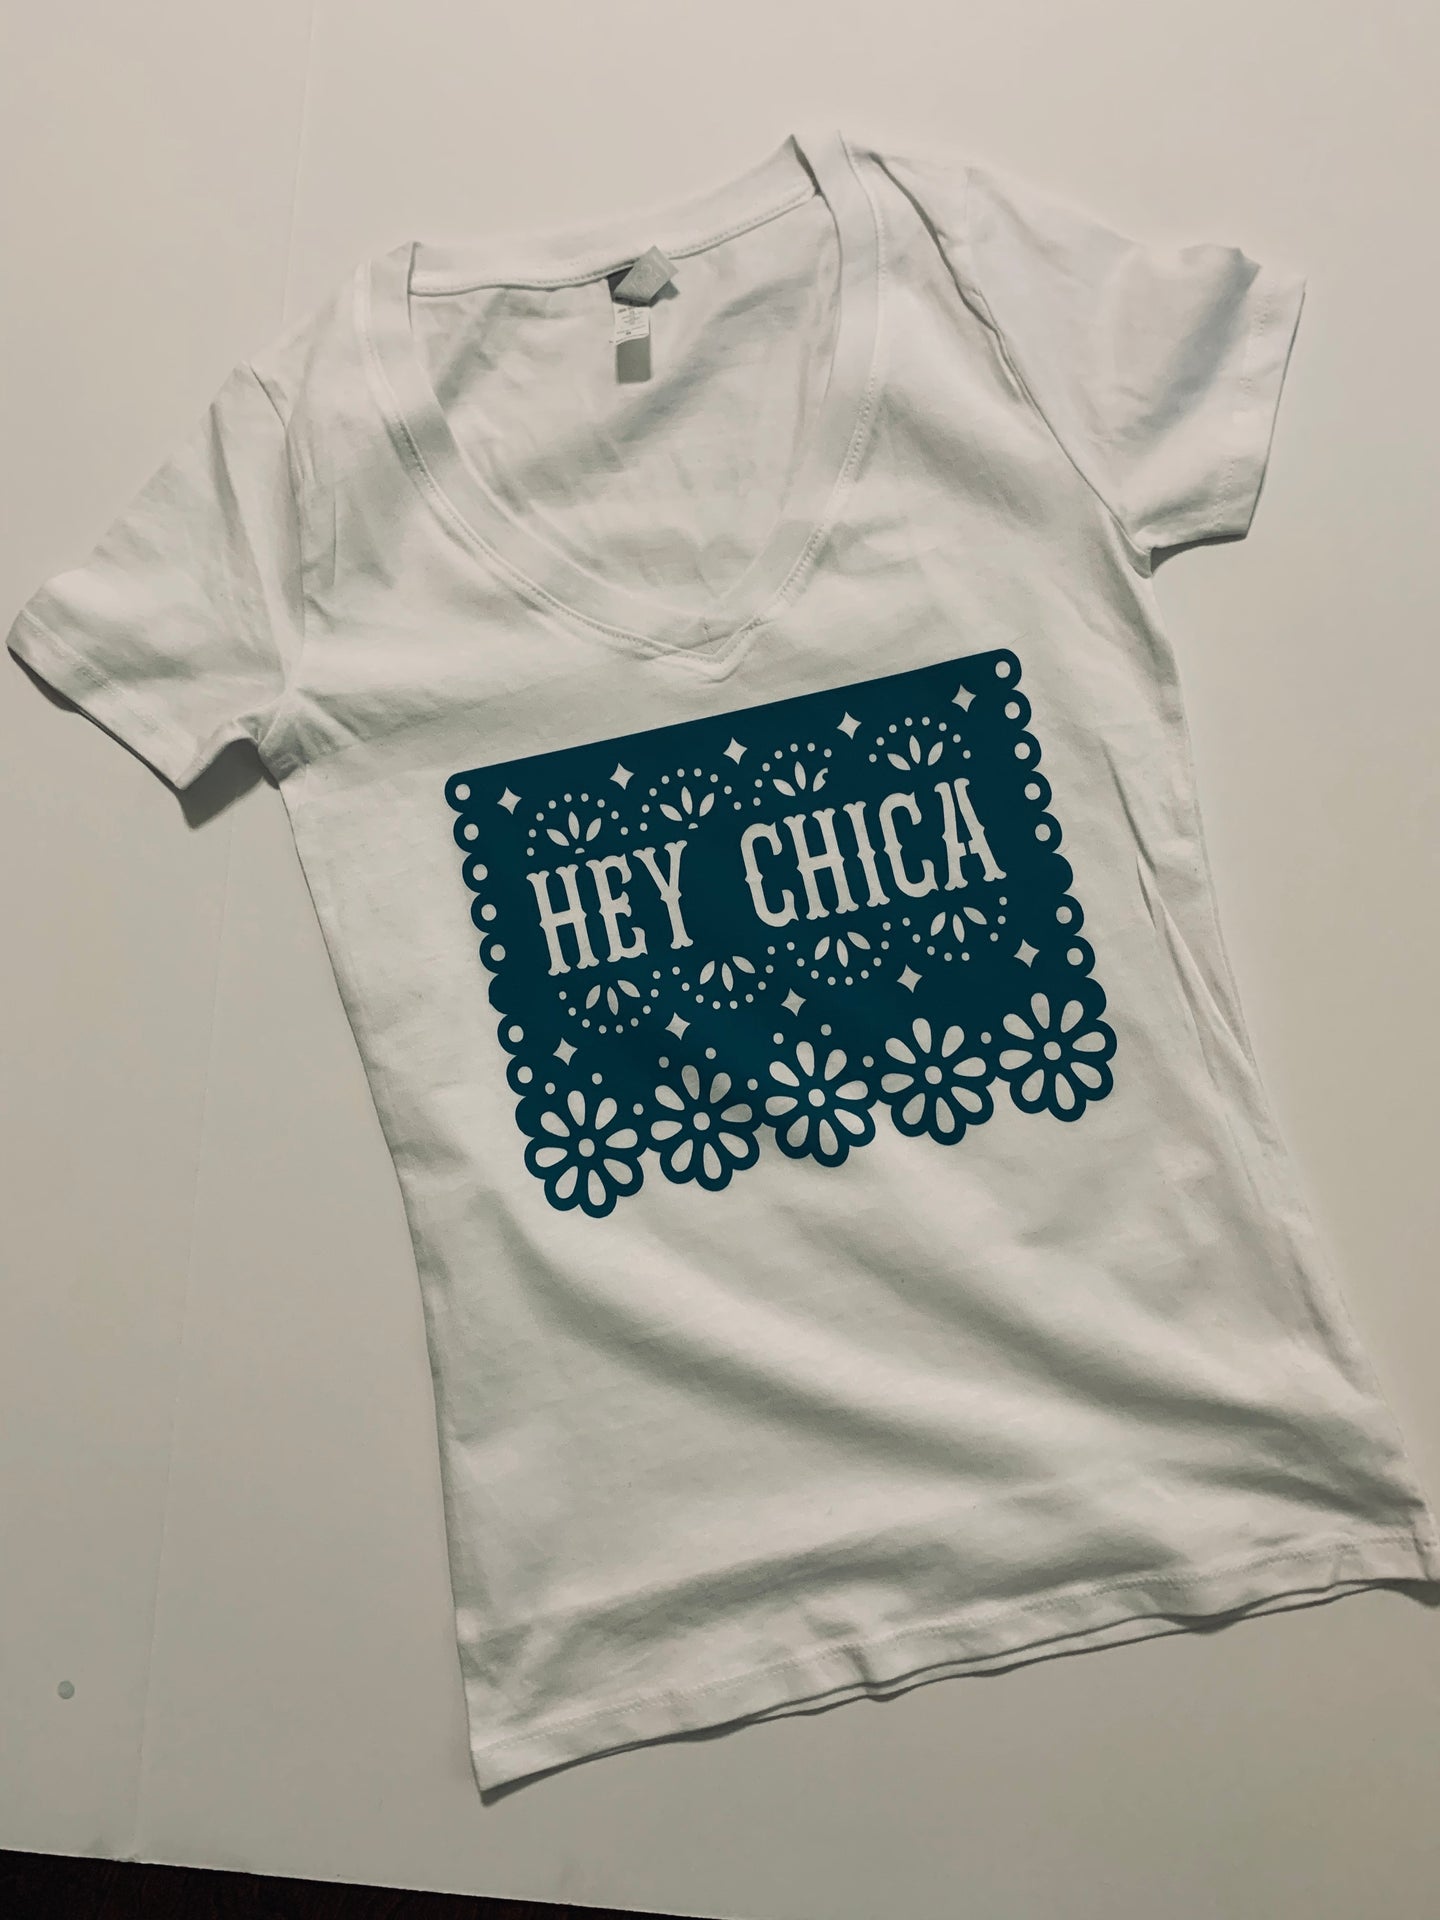 Hey Chica! Papel Picado White T-Shirt